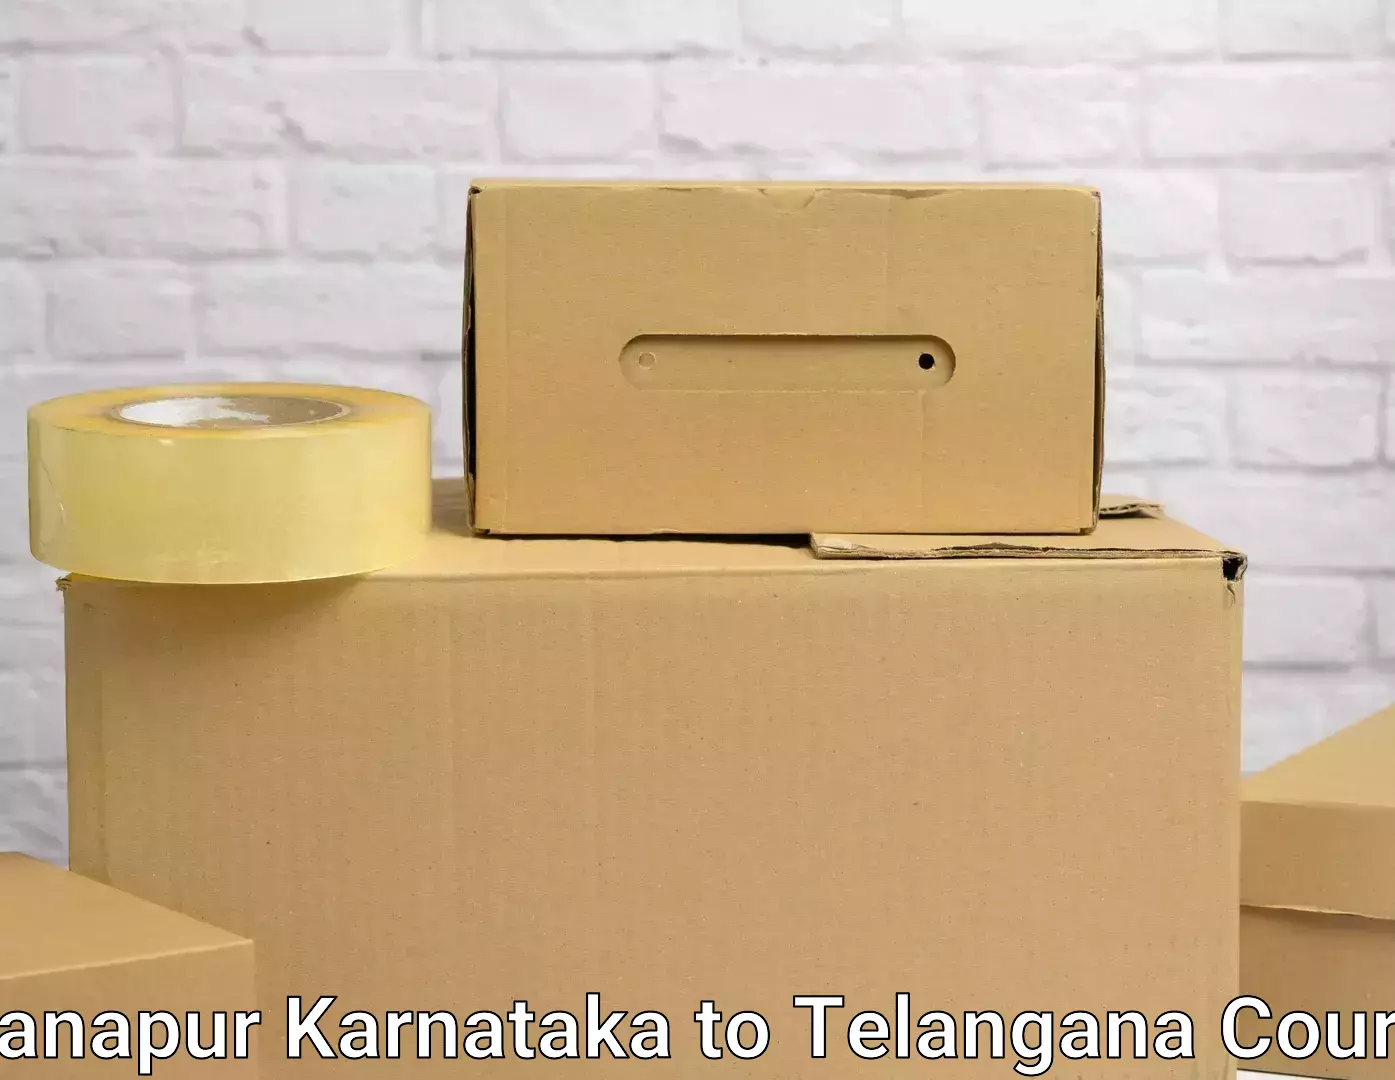 Moving and handling services Khanapur Karnataka to Tandur